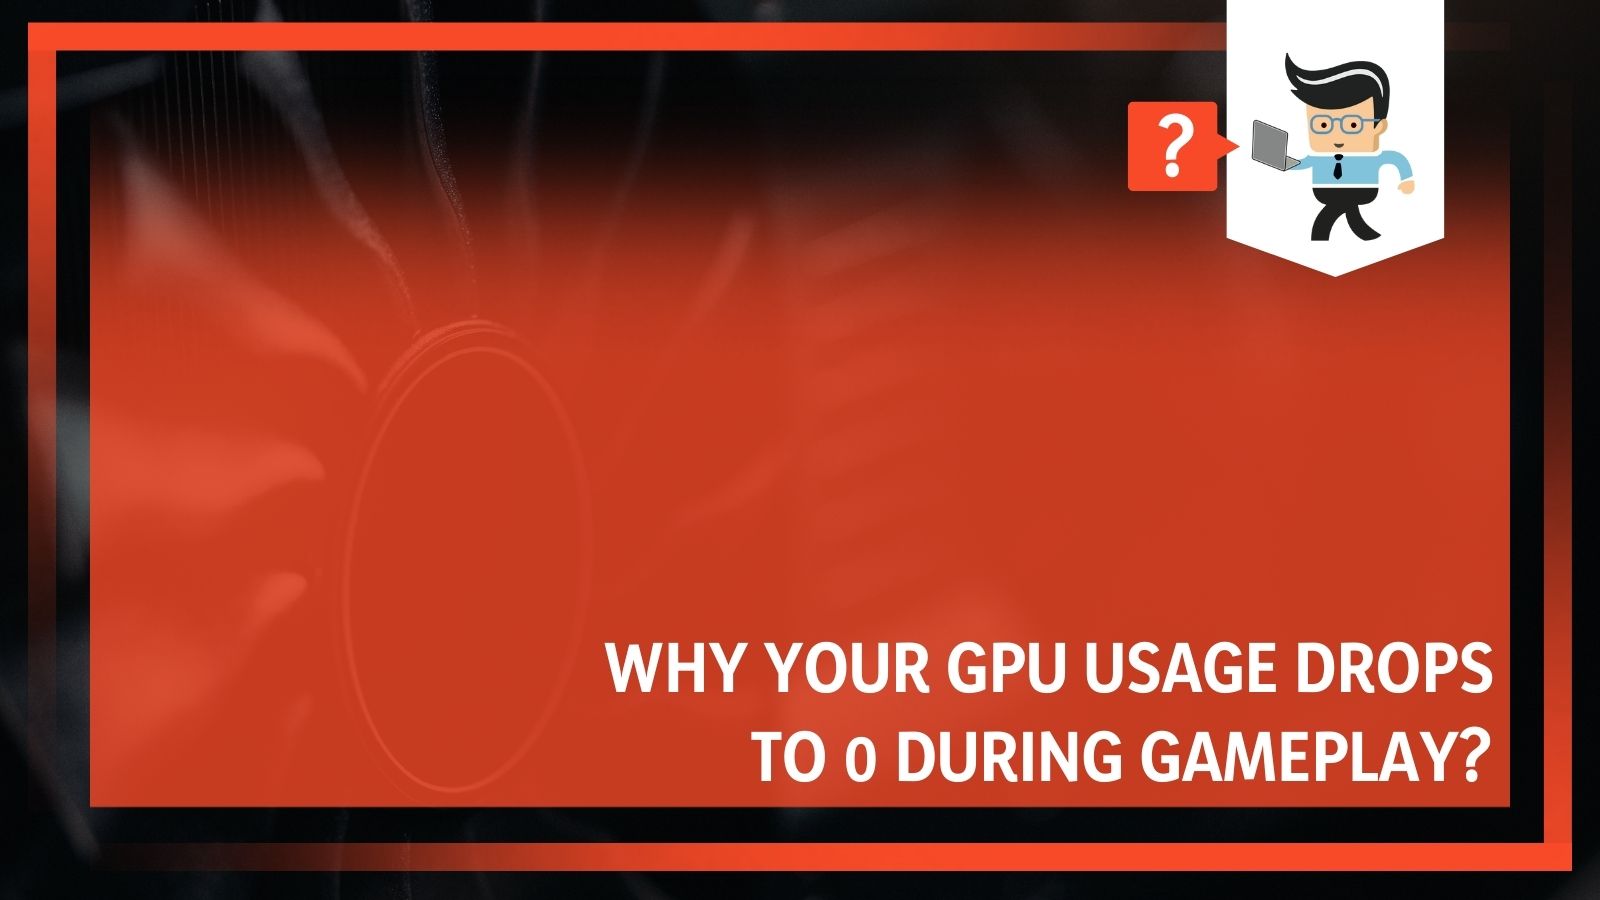 Gpu Usage Drops to During Gameplay